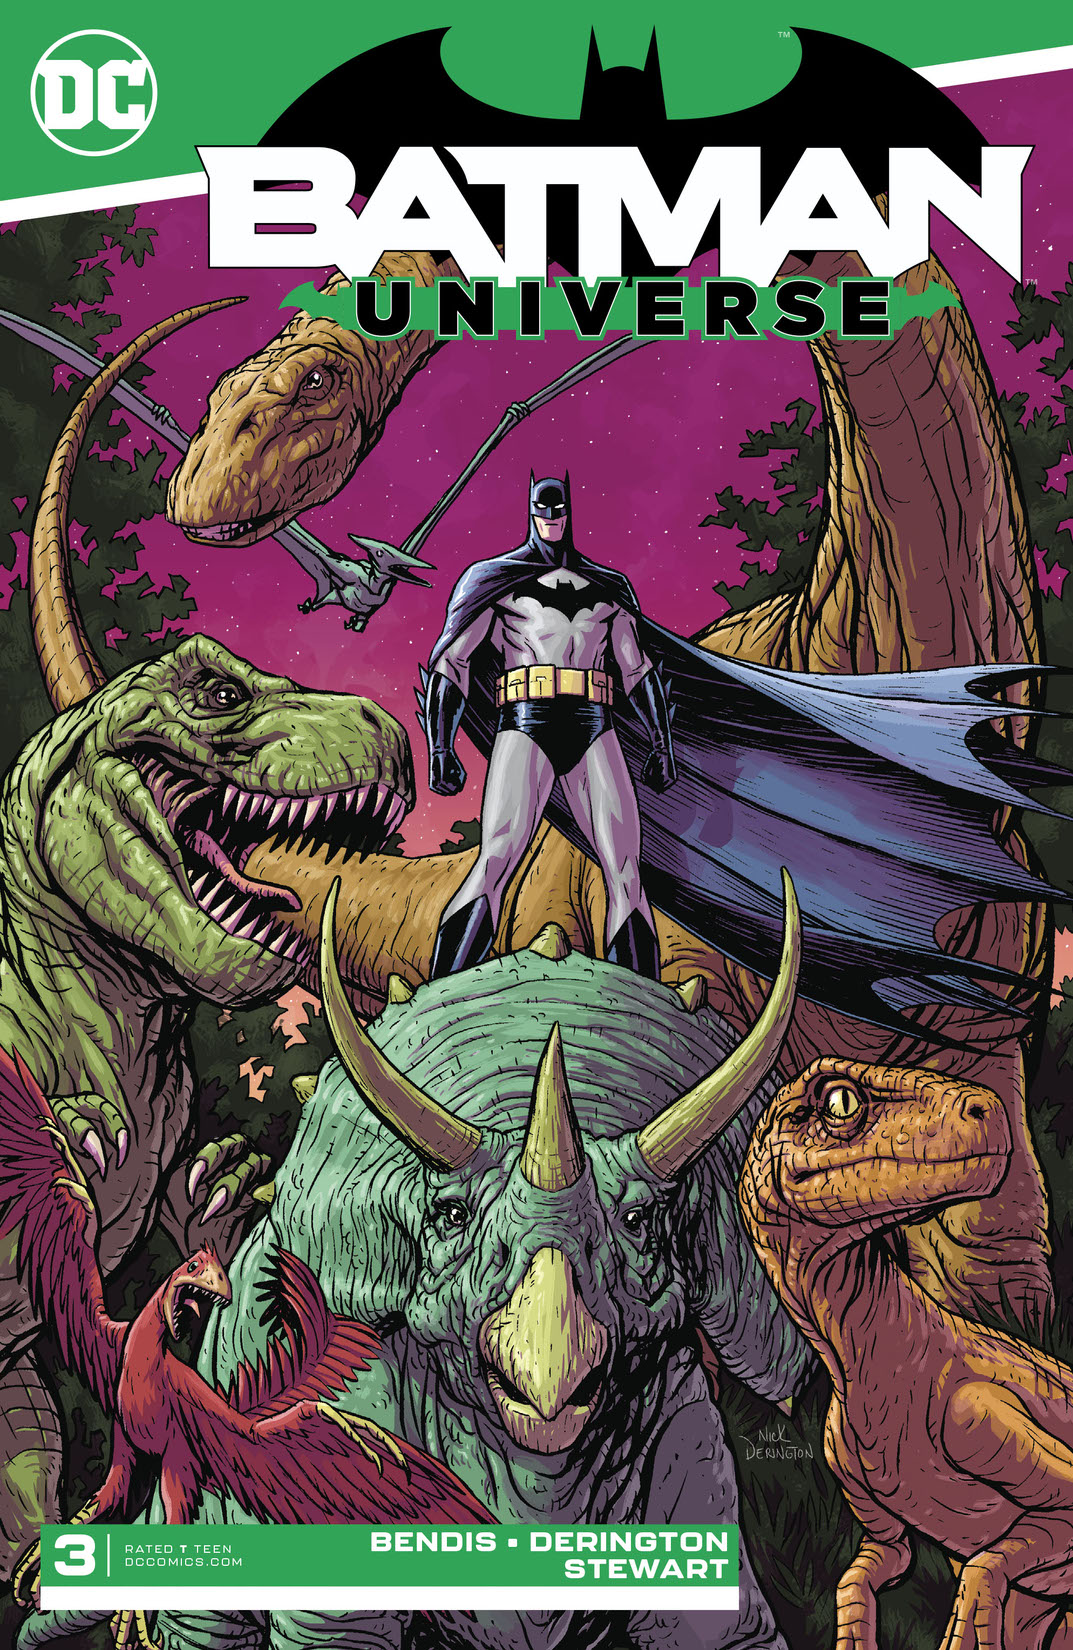 Batman: Universe #3 preview images